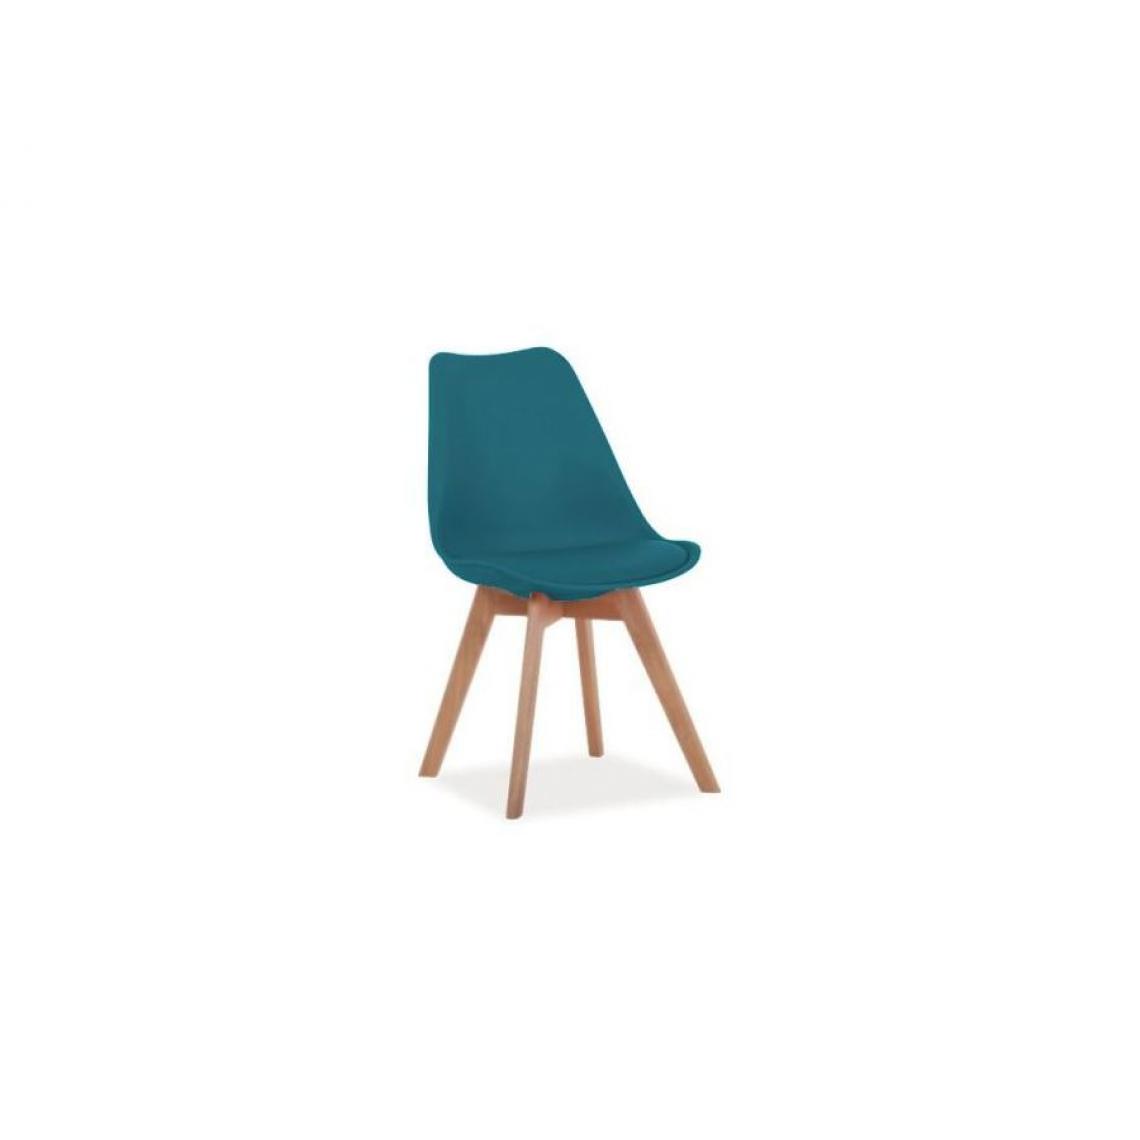 Hucoco - KRIL | Chaise style scandinave salle à manger salon bureau | 83x49x43 cm | PP + similicuir + bois | Chaise moderne - Bleu - Chaises